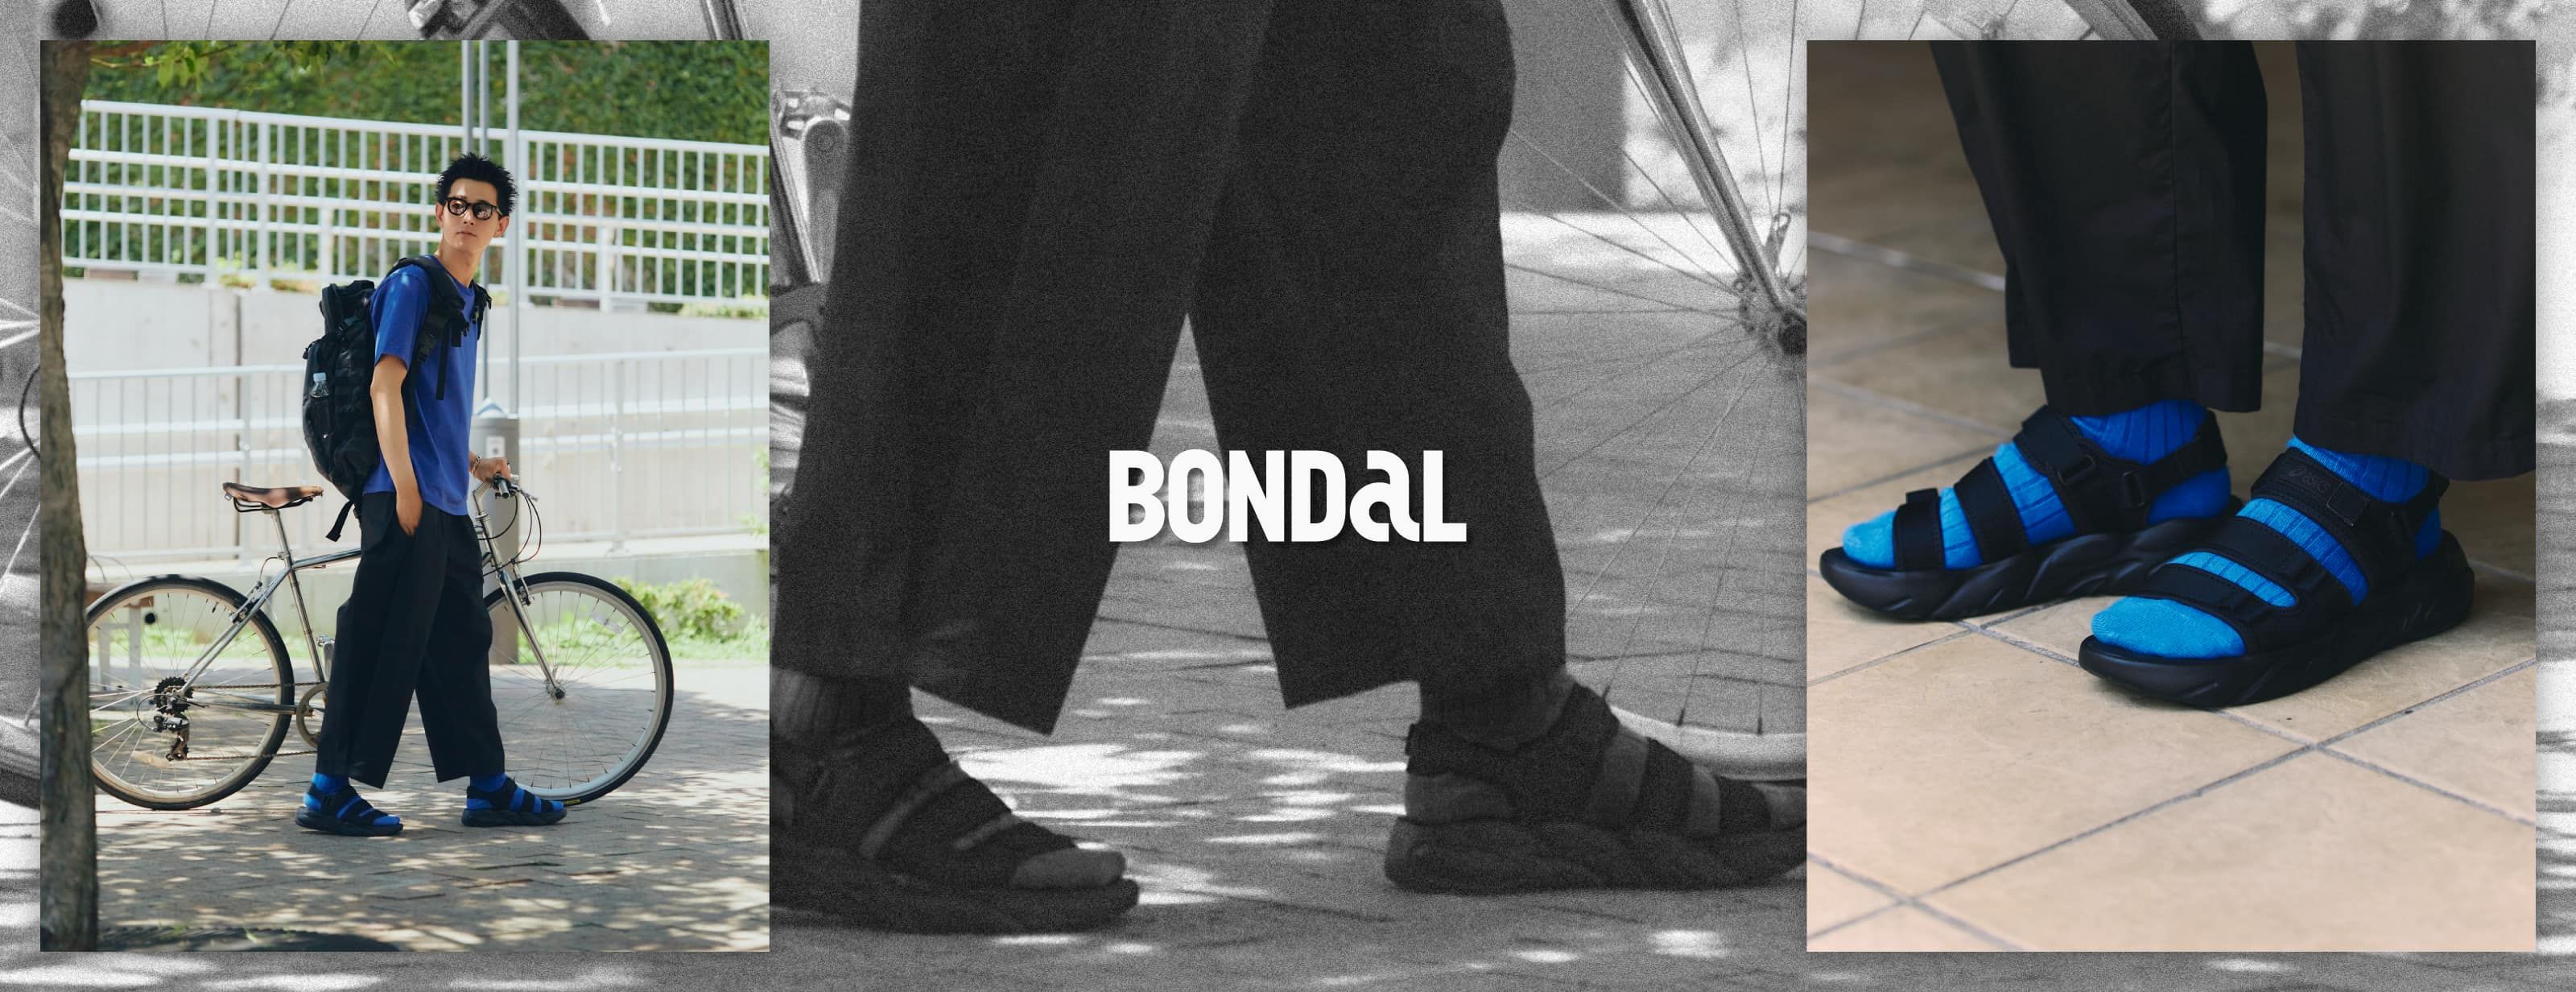 BONDAL ユニセックス スポーツスタイル スニーカー